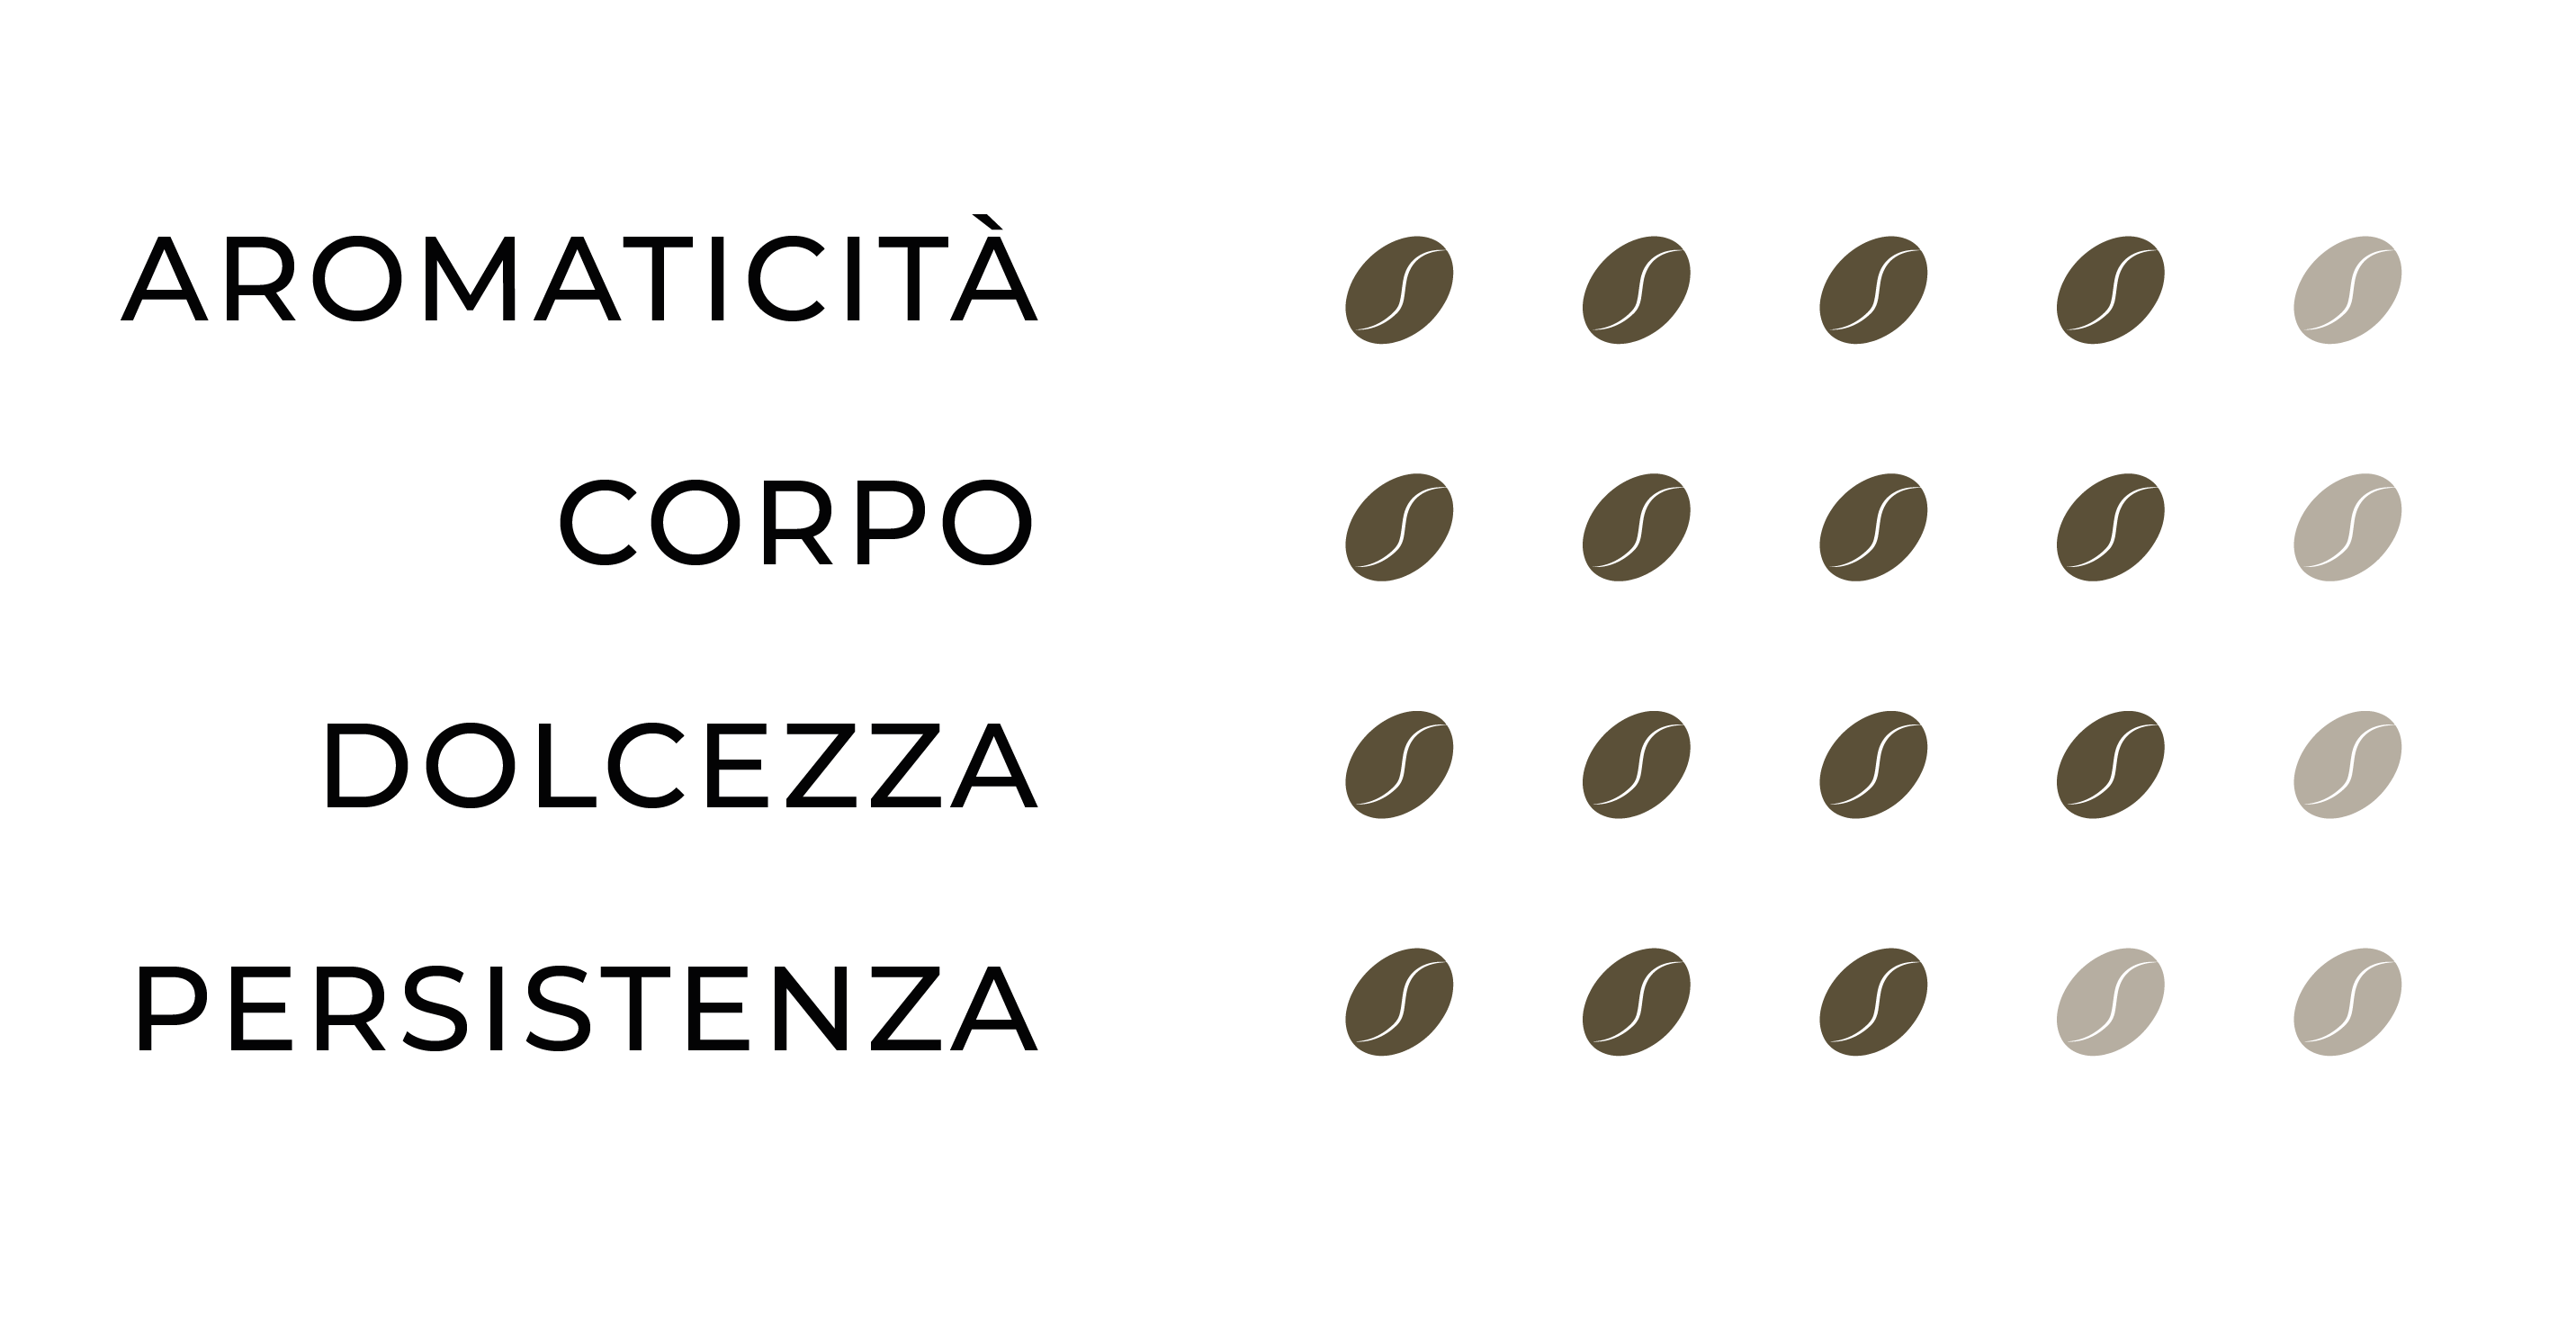 Profilo sensoriale Espresso Naturale: Aromaticità=4, Corpo=4, Dolcezza=4, Persistenza=3